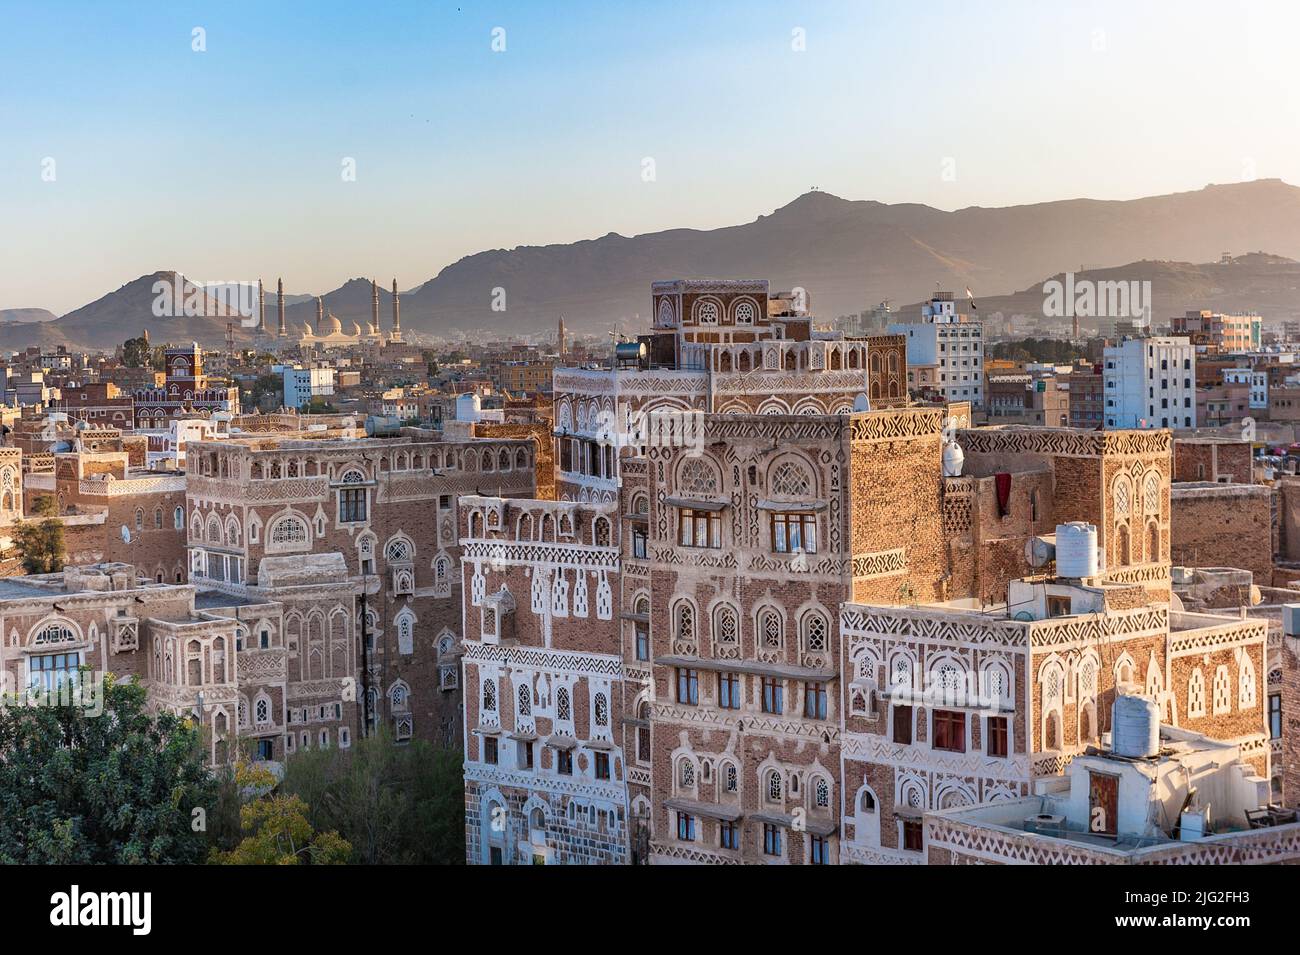 Panorama of Sanaa, capital of Yemen Stock Photo